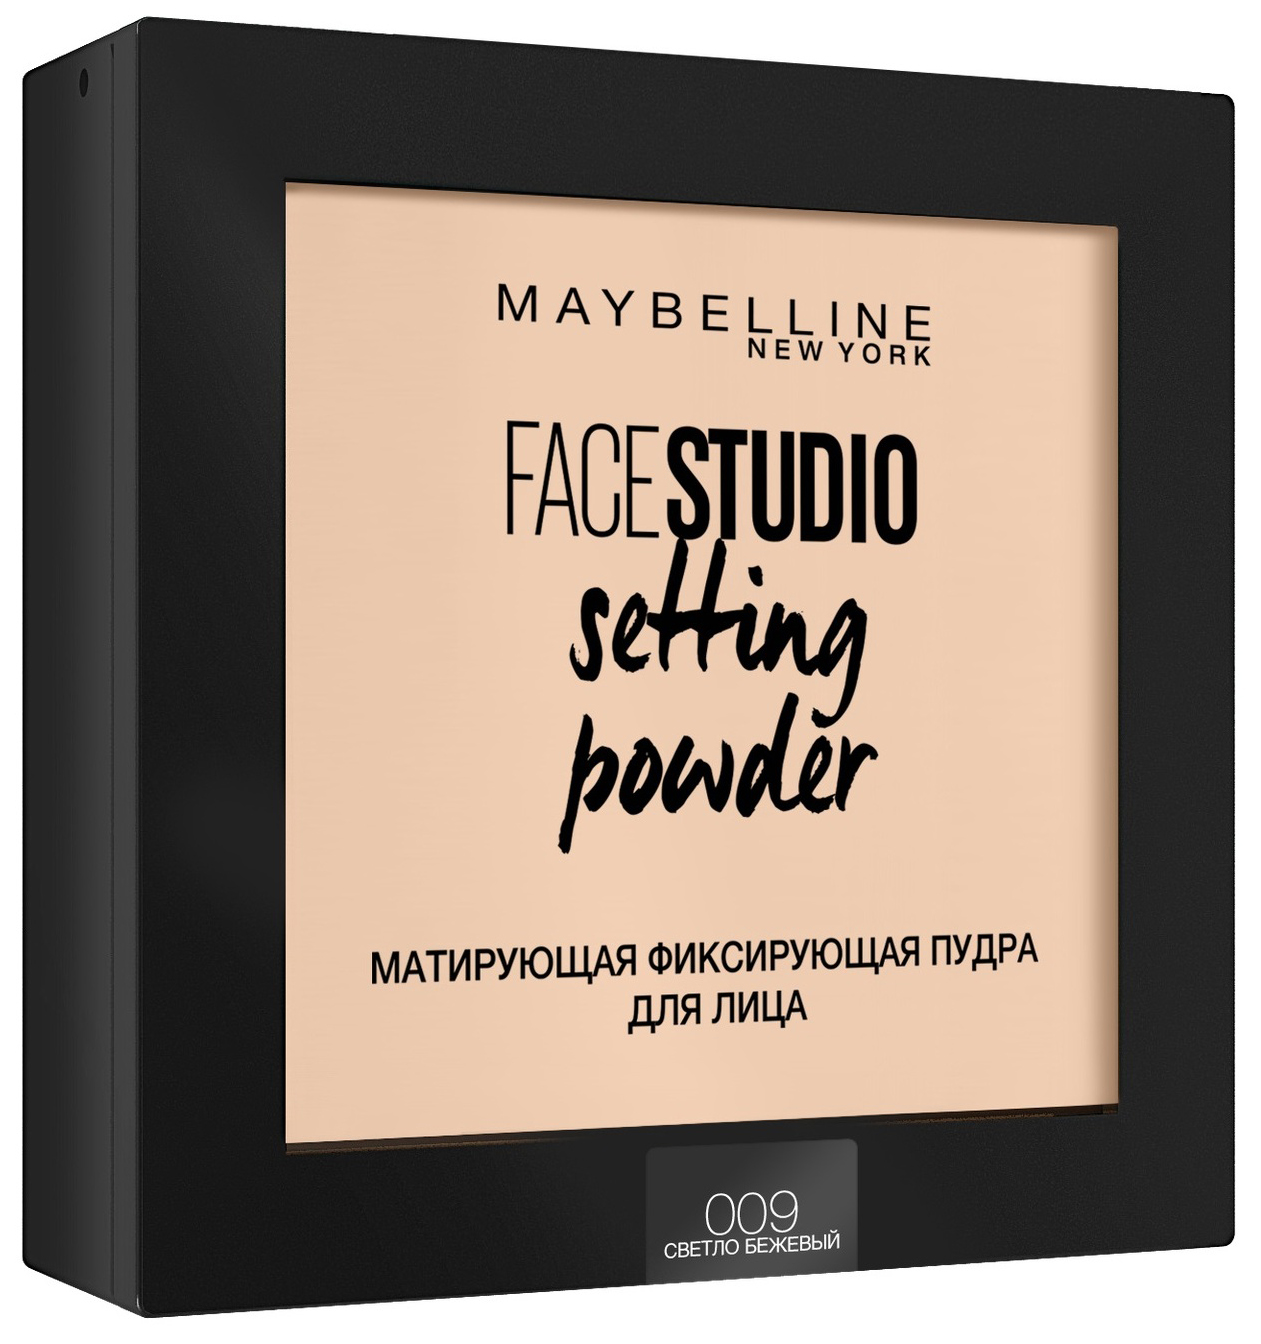 Пудра Maybelline Face Studio Setting Powder 009 Светло-бежевый 9 г пудра компактная запеченная luminys baked face powder 9г 01 ivory beige